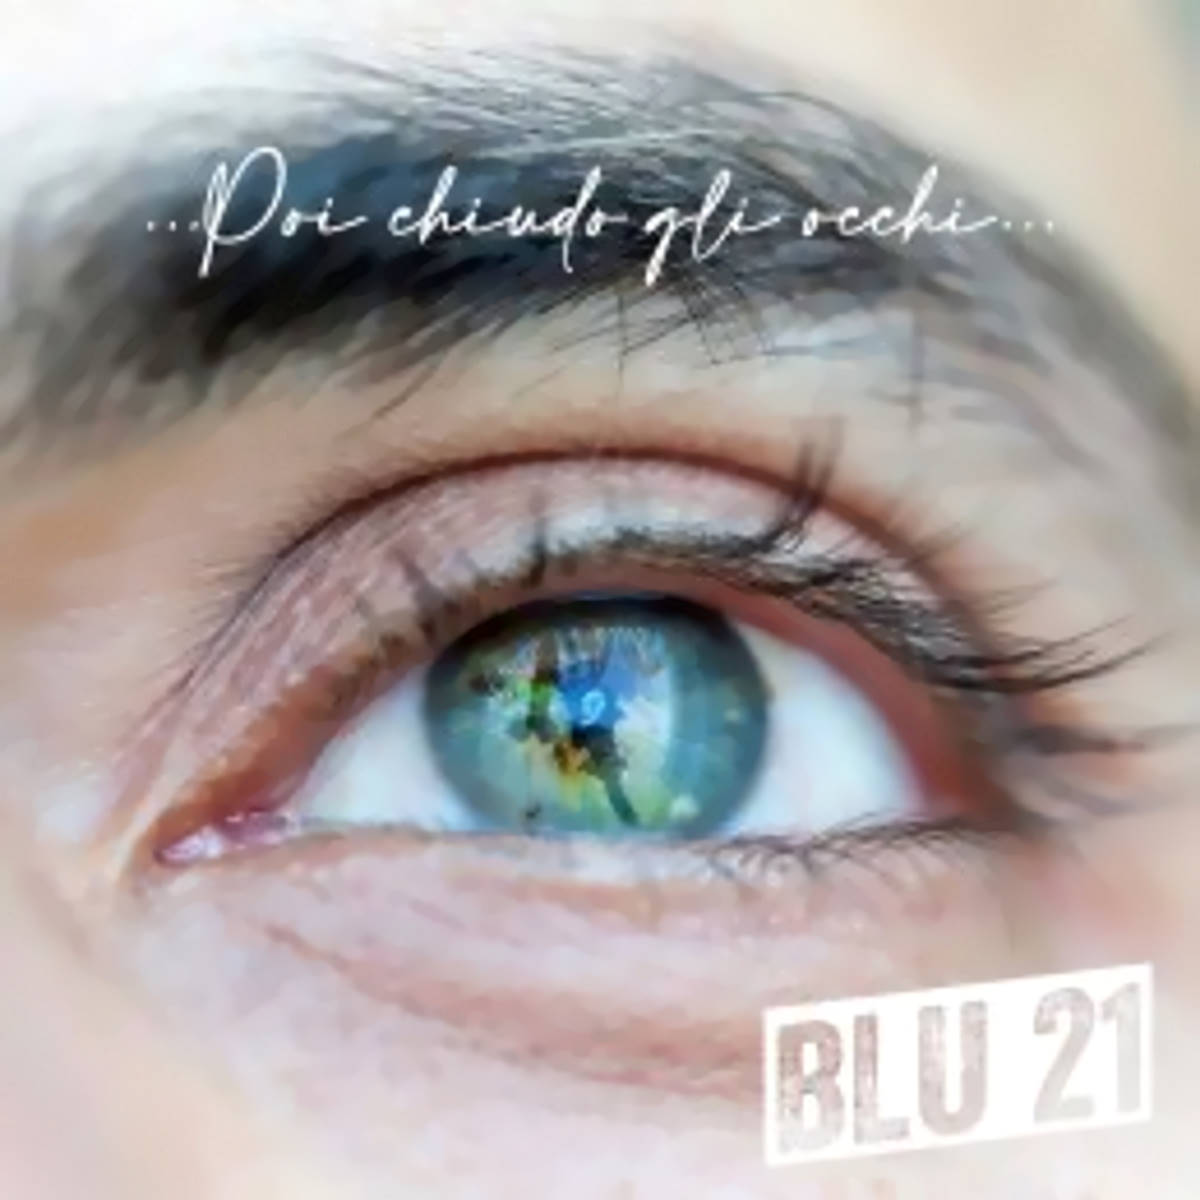 BLU 21, “Poi chiudo gli occhi” è il nuovo singolo estratto da “Ricordami”, l’album d’esordio del duo elettro pop